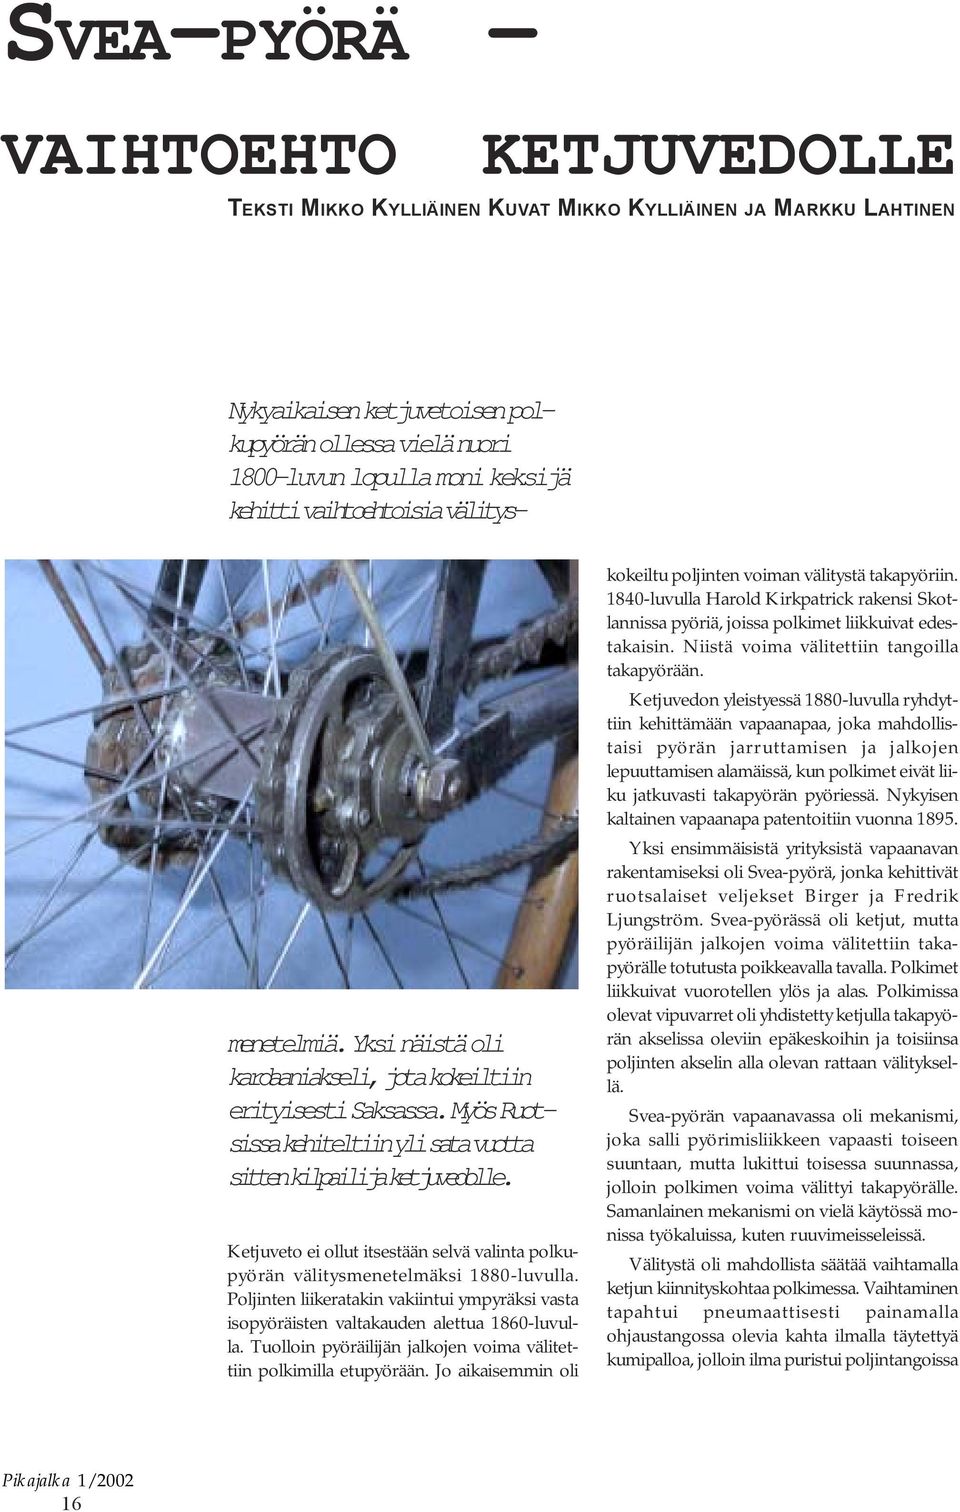 Ketjuveto ei ollut itsestään selvä valinta polkupyörän välitysmenetelmäksi 1880-luvulla. Poljinten liikeratakin vakiintui ympyräksi vasta isopyöräisten valtakauden alettua 1860-luvulla.